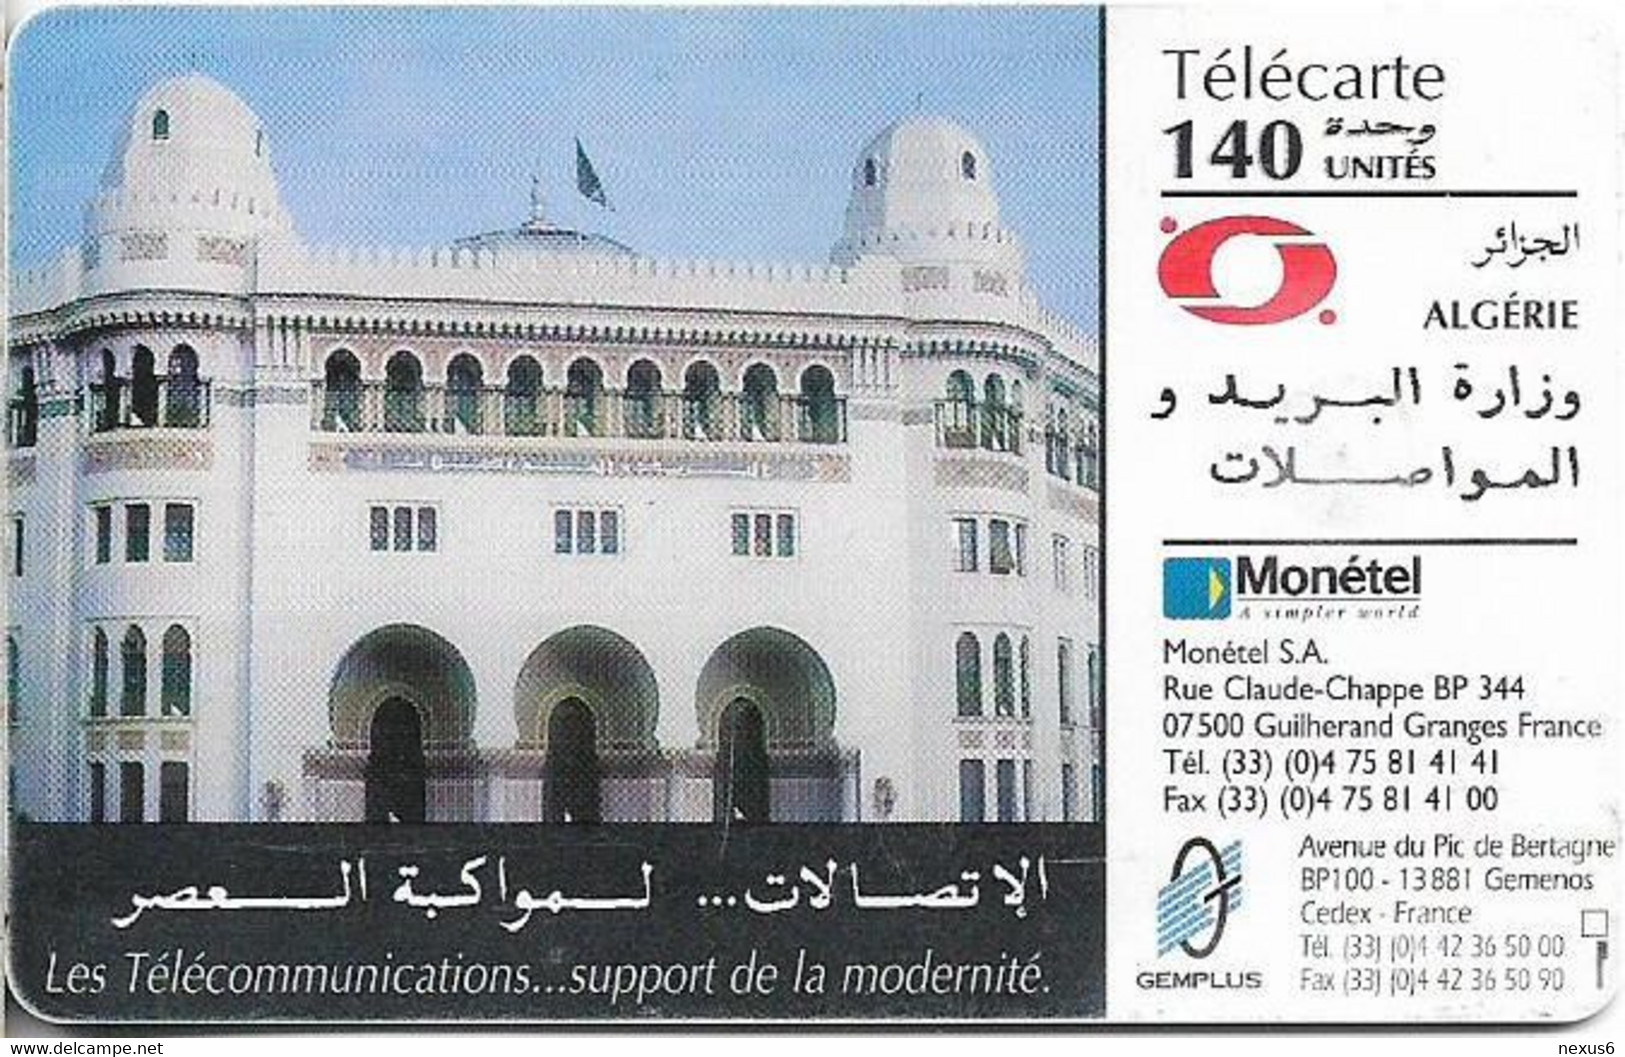 Algeria - PTT-Monetel - Central Post Office, Gem1B Not Symmetr. White/Gold, 1996, 140Units, Used - Algerije